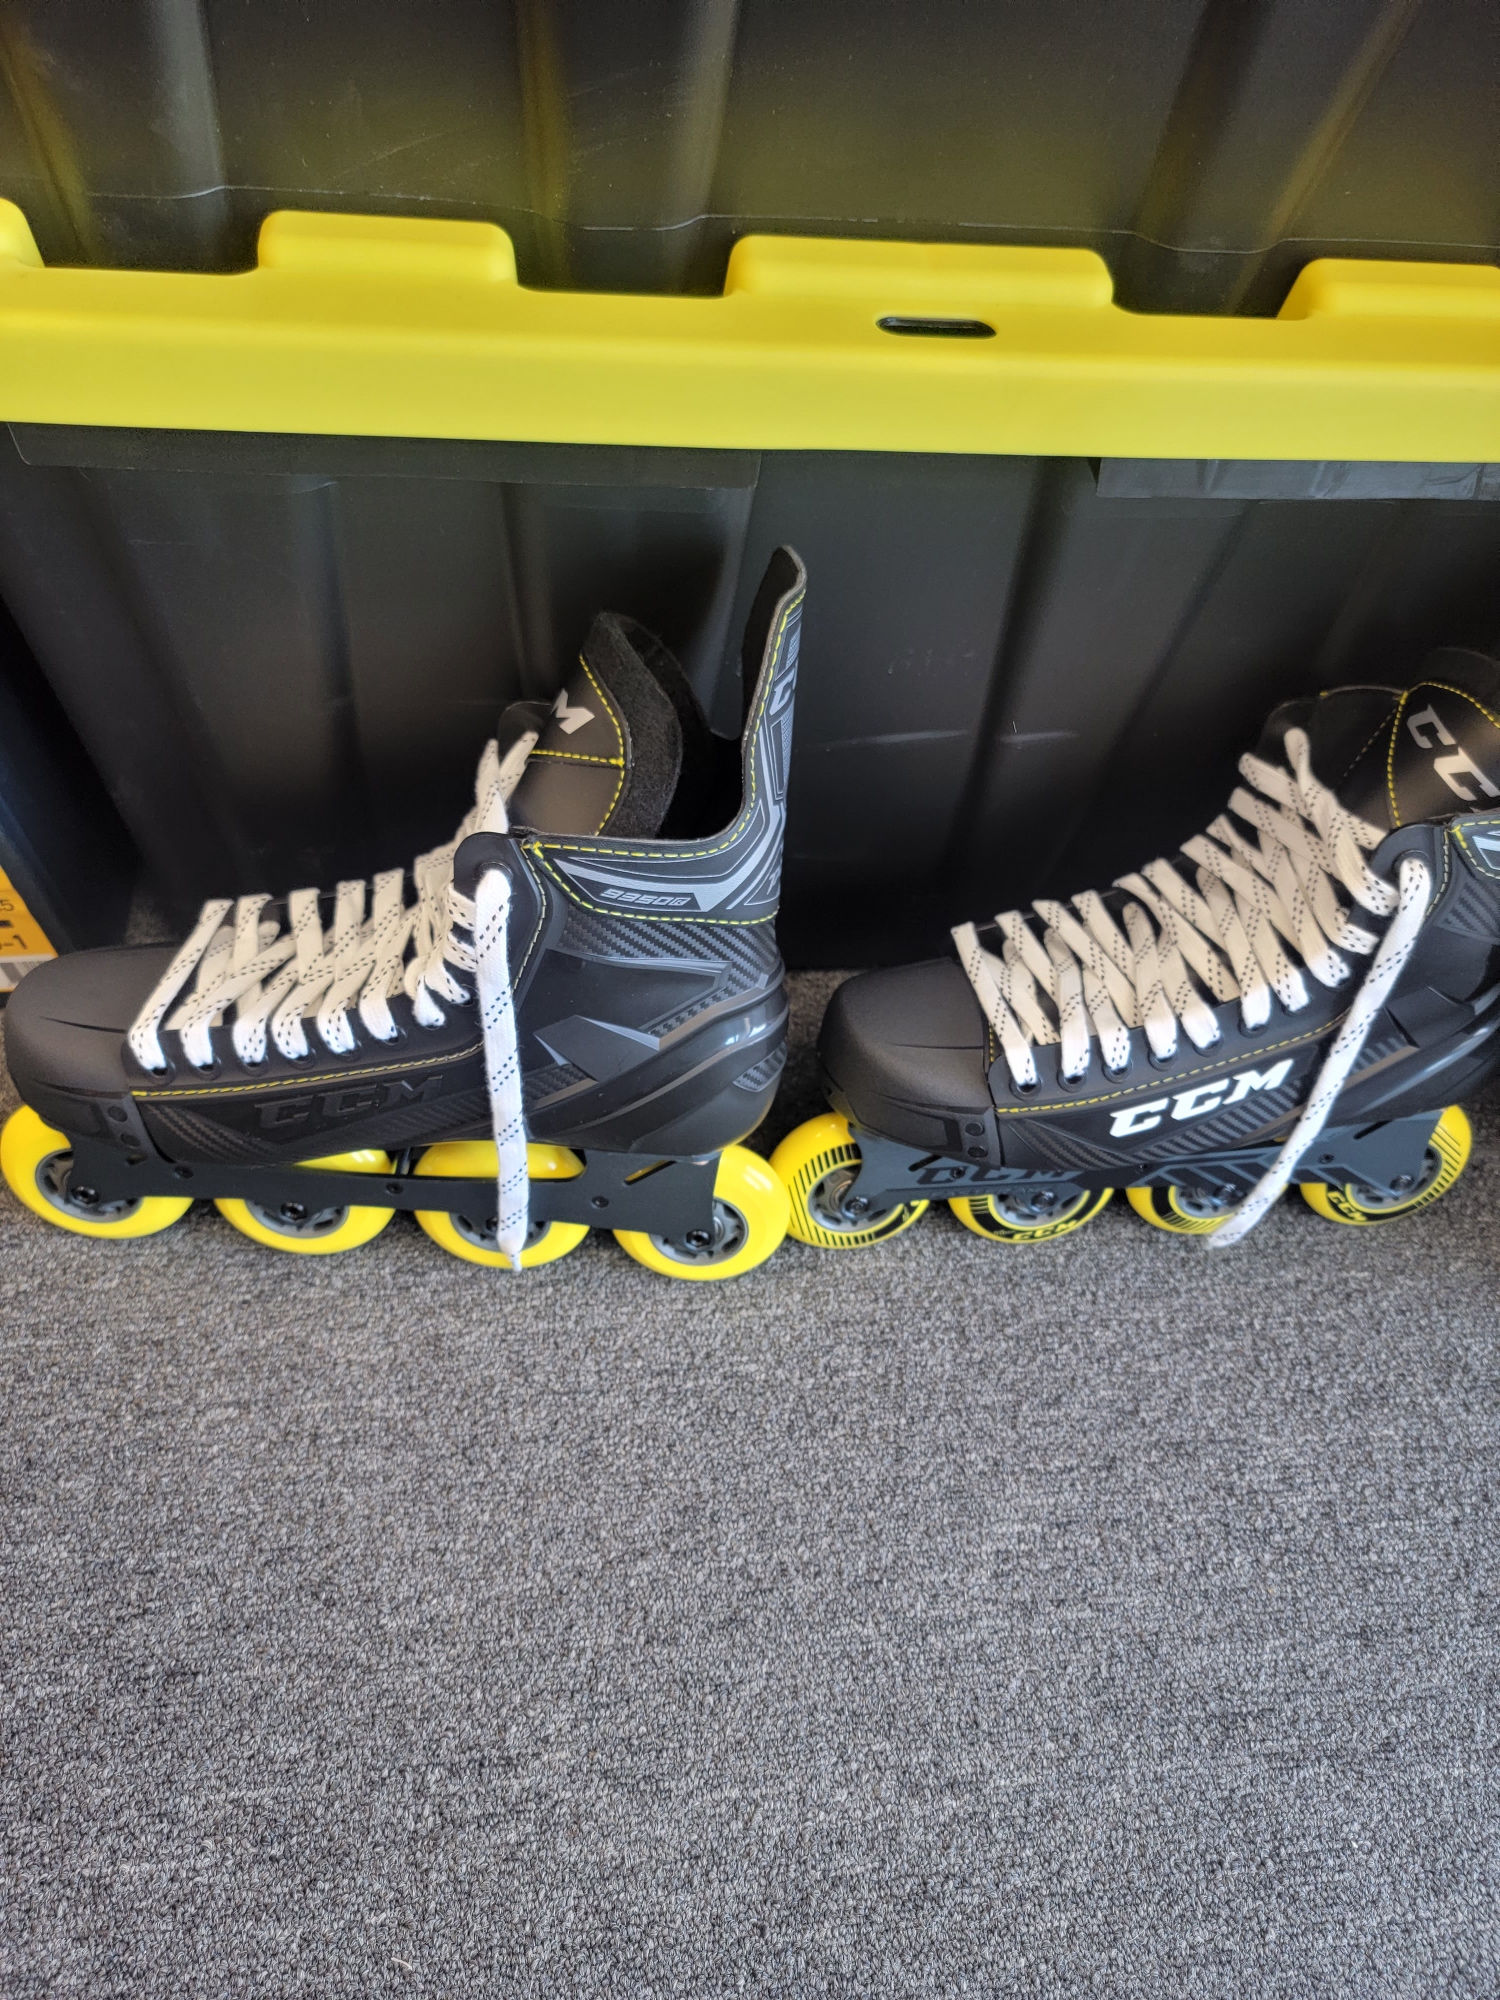 New CCM Super Tacks 9350 Inline Skates Regular Width Size 7